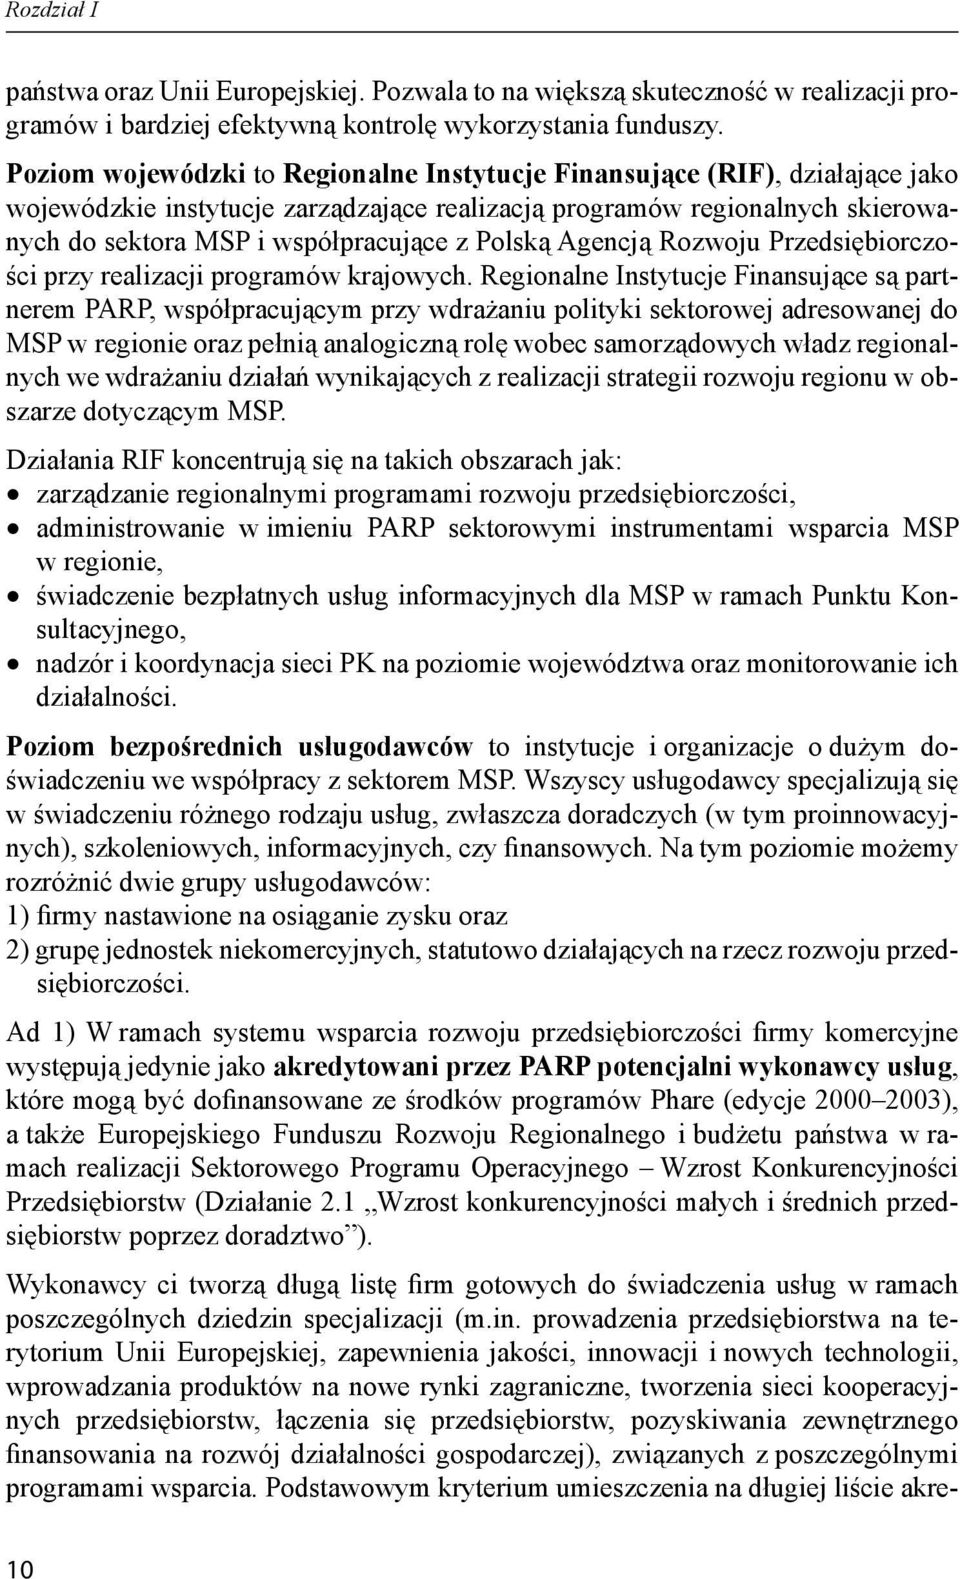 Polską Agencją Rozwoju Przedsiębiorczości przy realizacji programów krajowych.